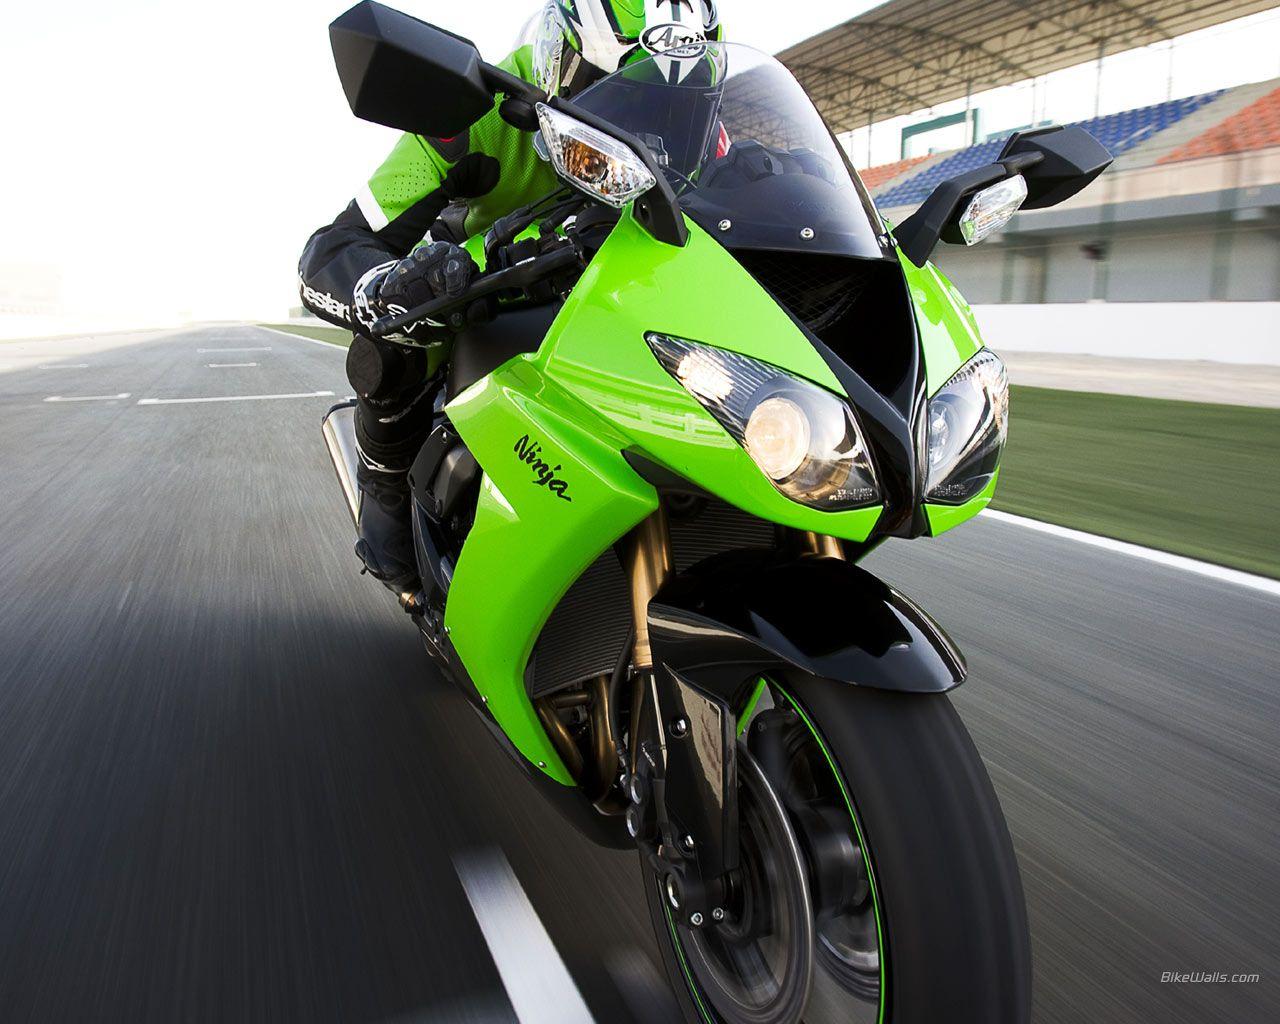 New 2012 Car Review: Kawasaki Ninja Sport Bike Wallpaper, Image